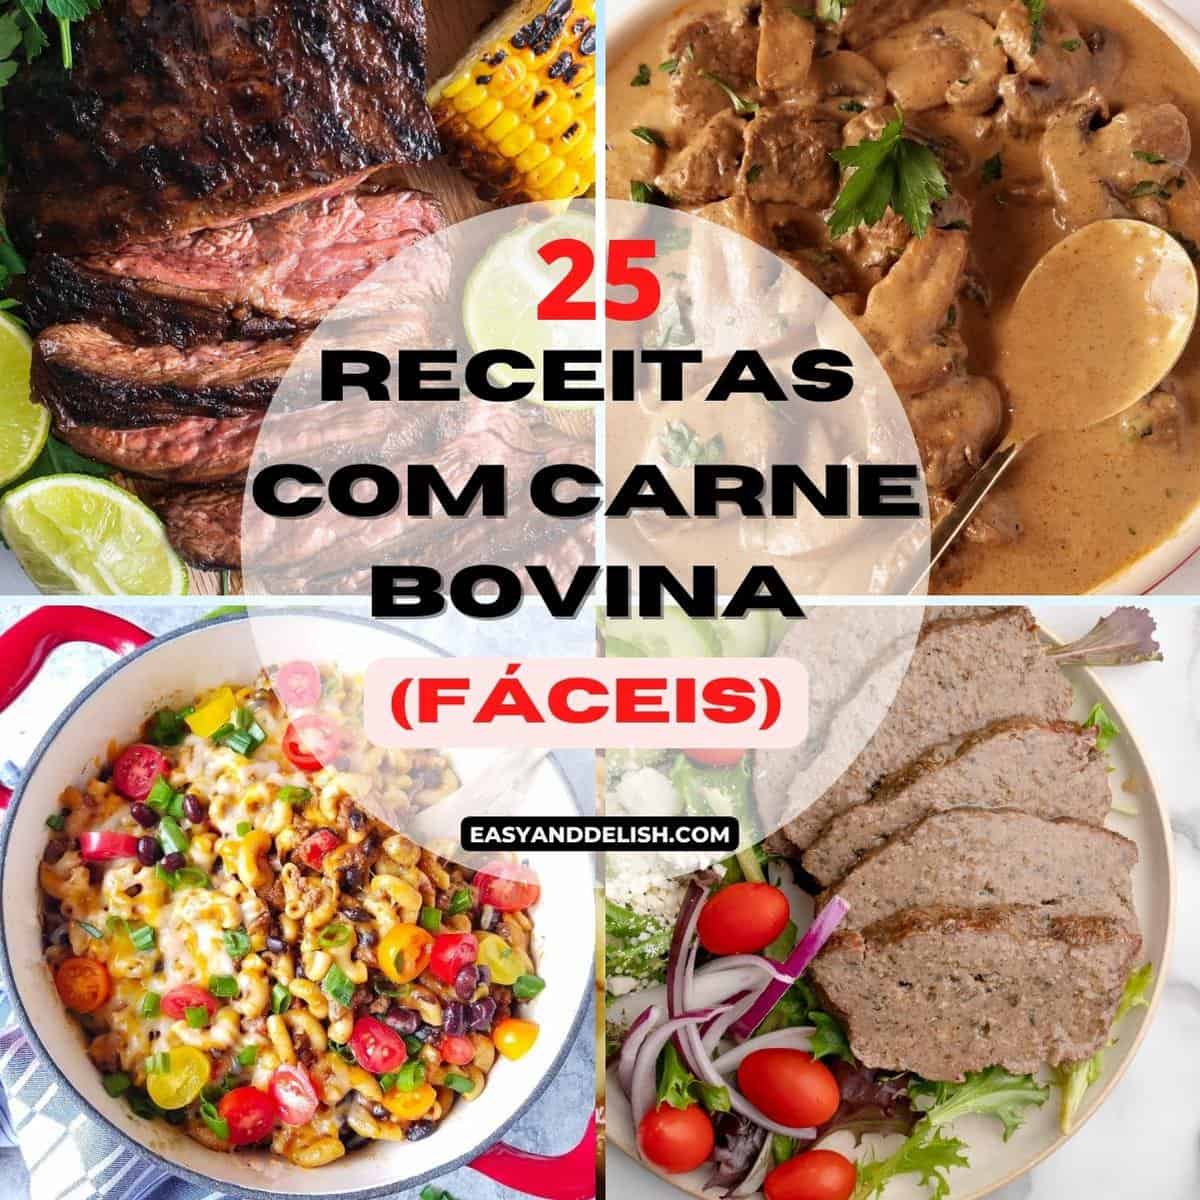 25 Receitas com Carne Bovina - Easy and Delish